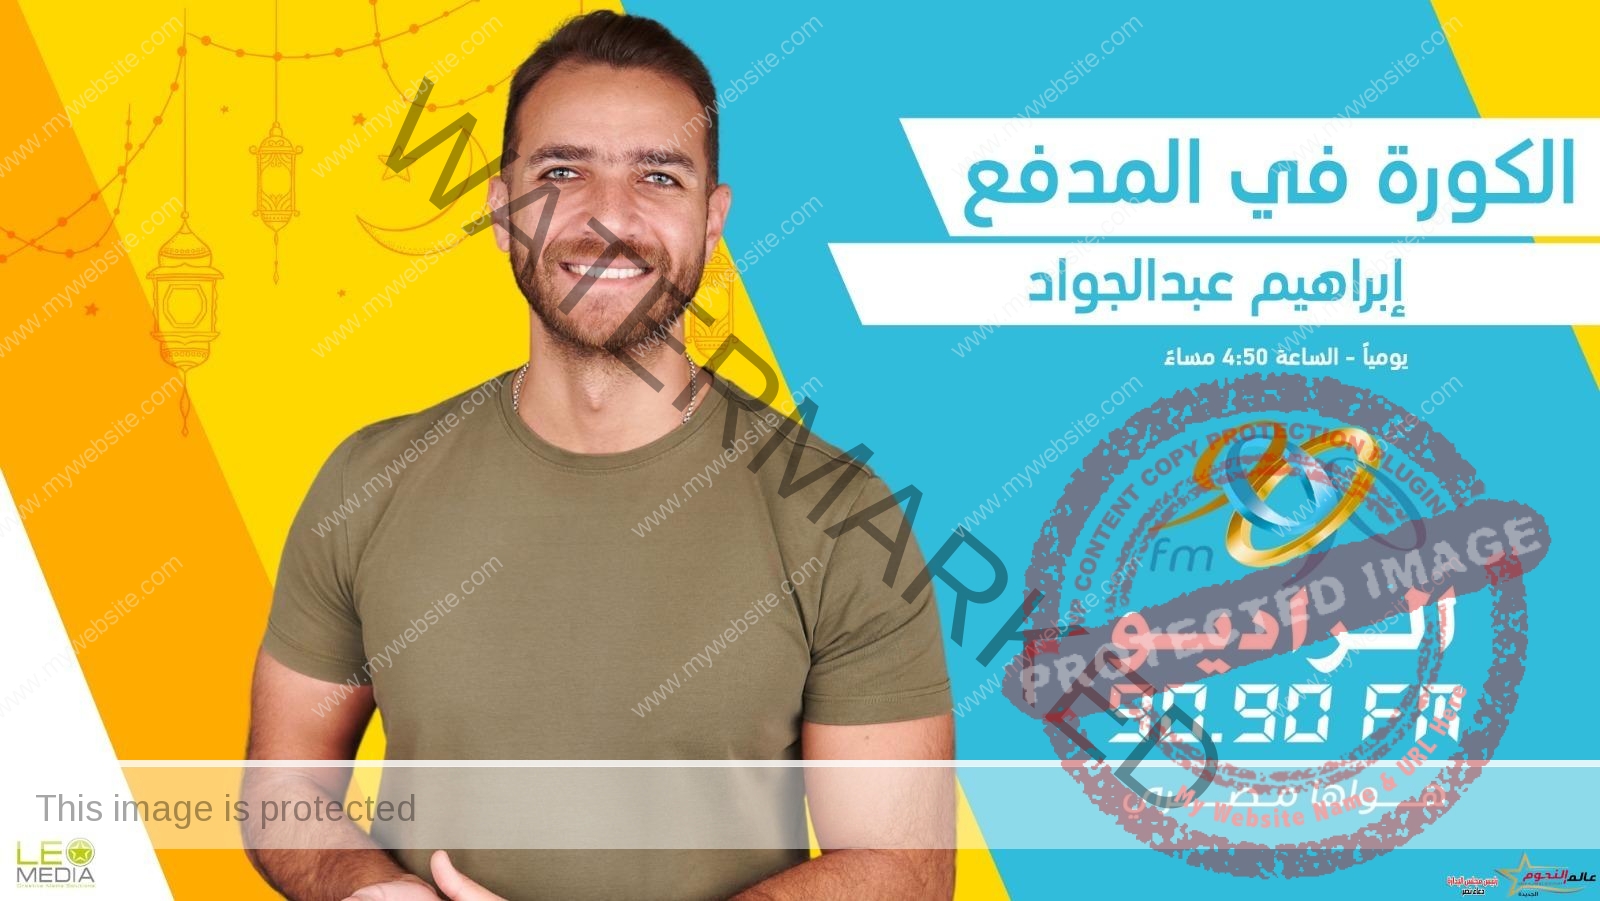 الكورة في المدفع.. أسرار نجوم الرياضة مع إبراهيم عبدالجواد على الراديو 9090